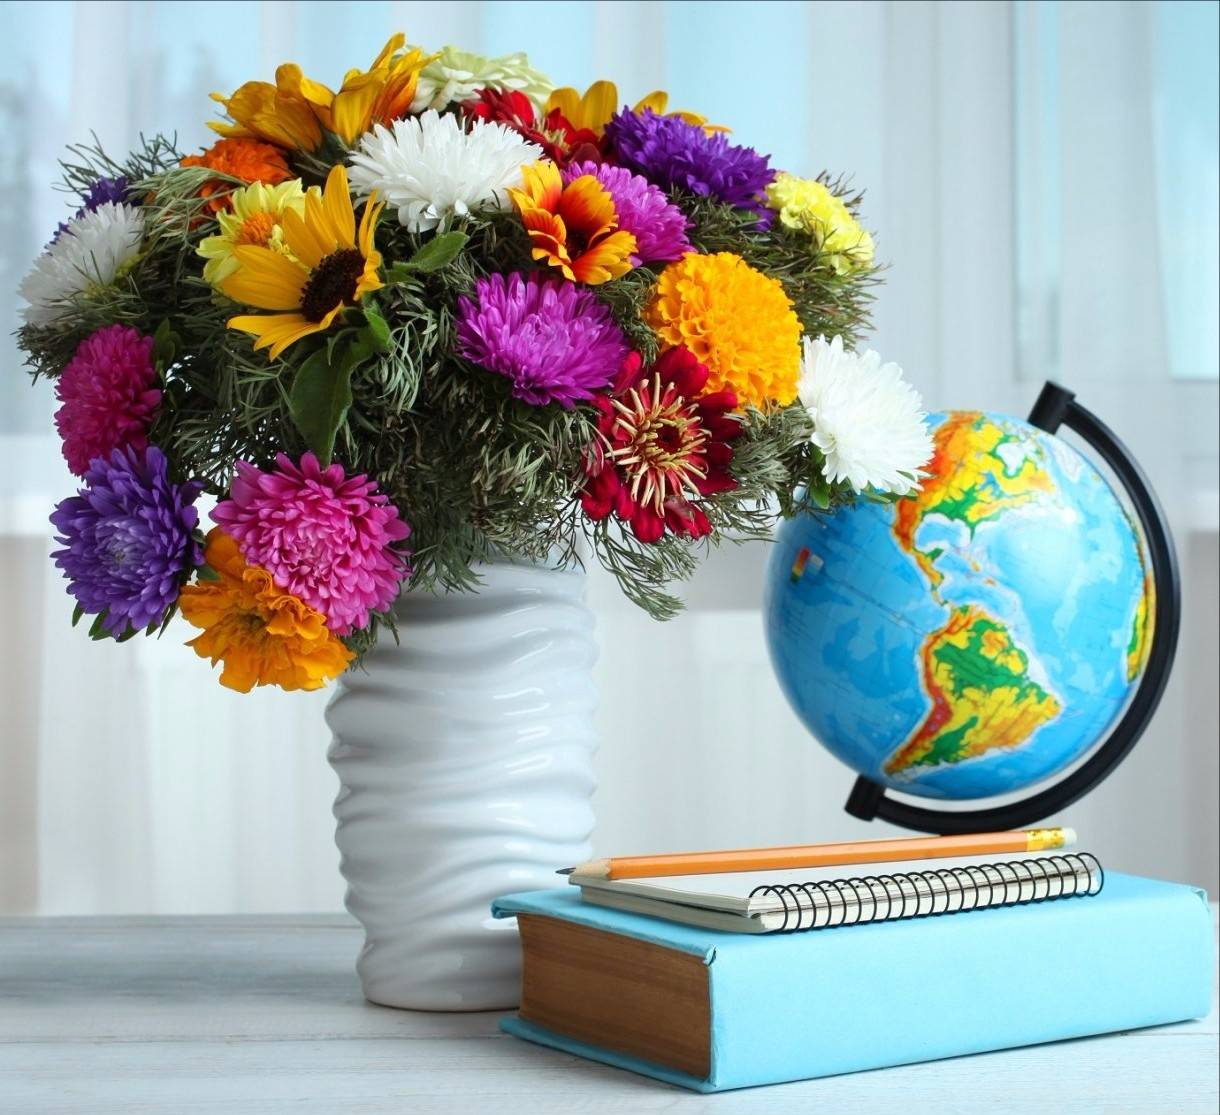 Фото красивых цветов в вазе подаренных учителю